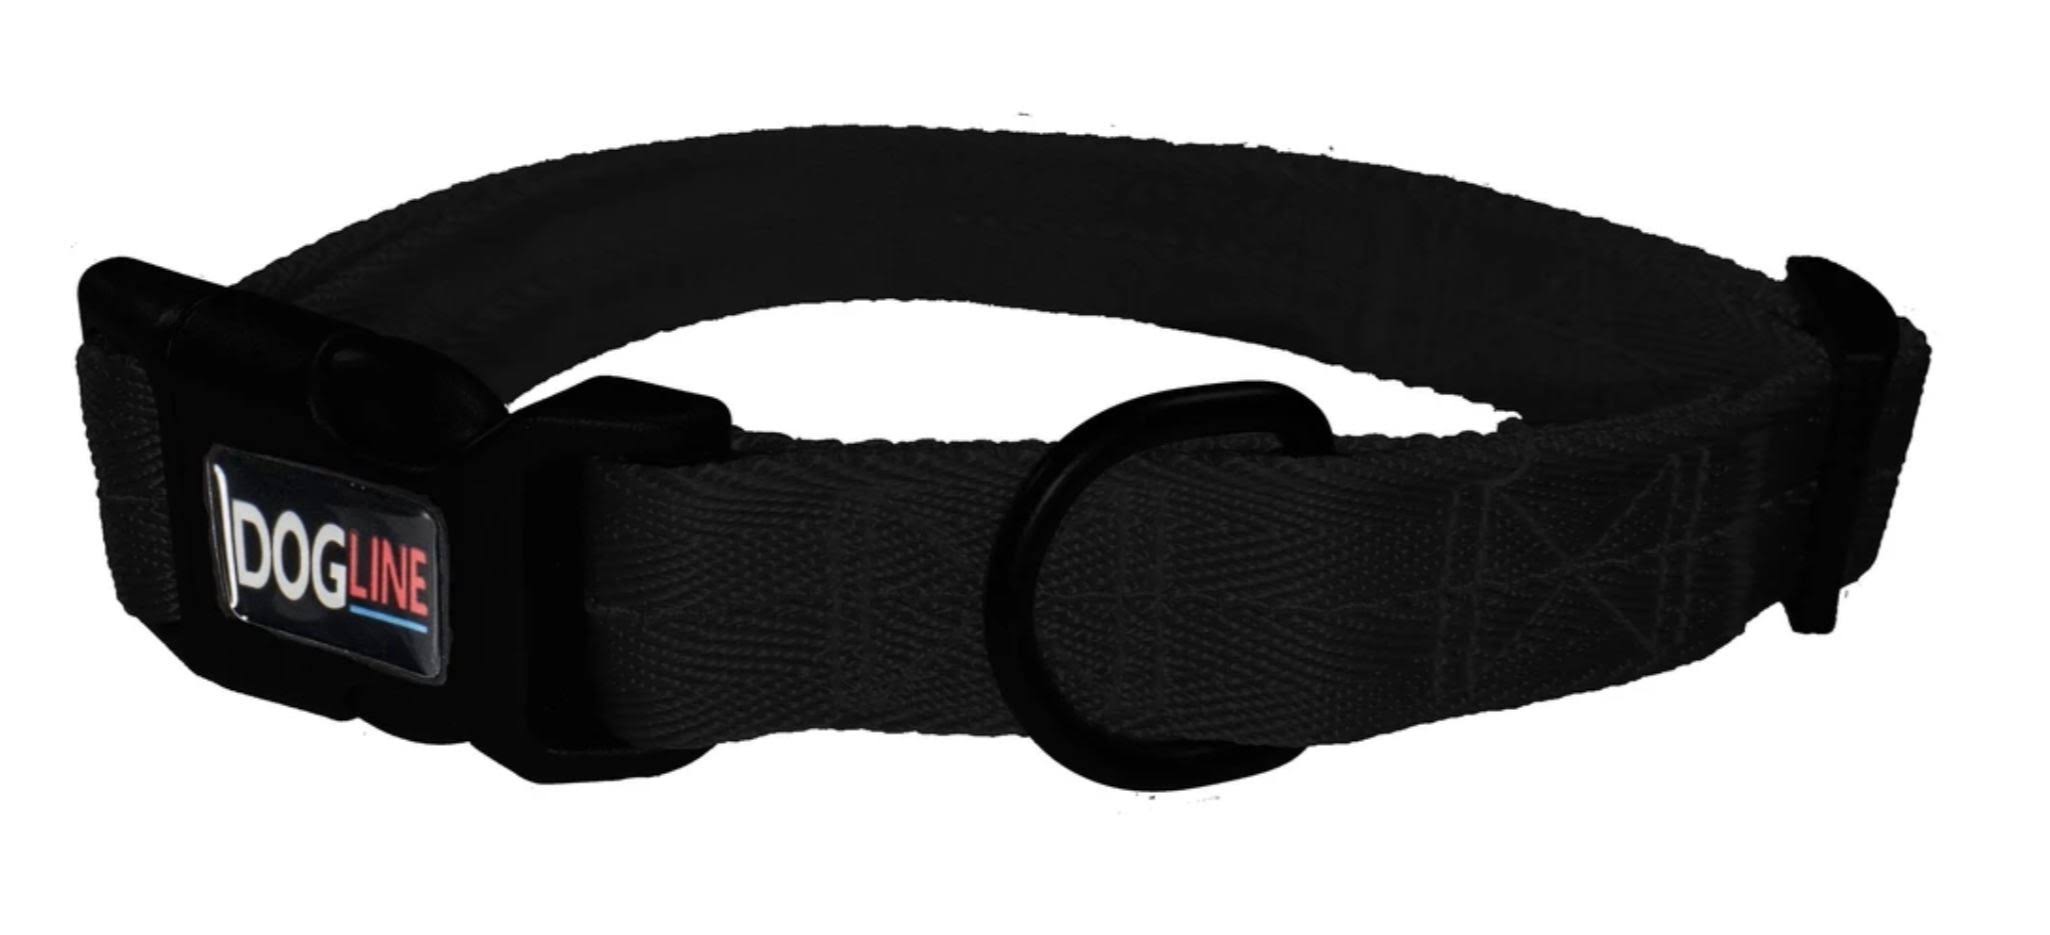 Dogline Nylon Dog Collar - Black - Medium